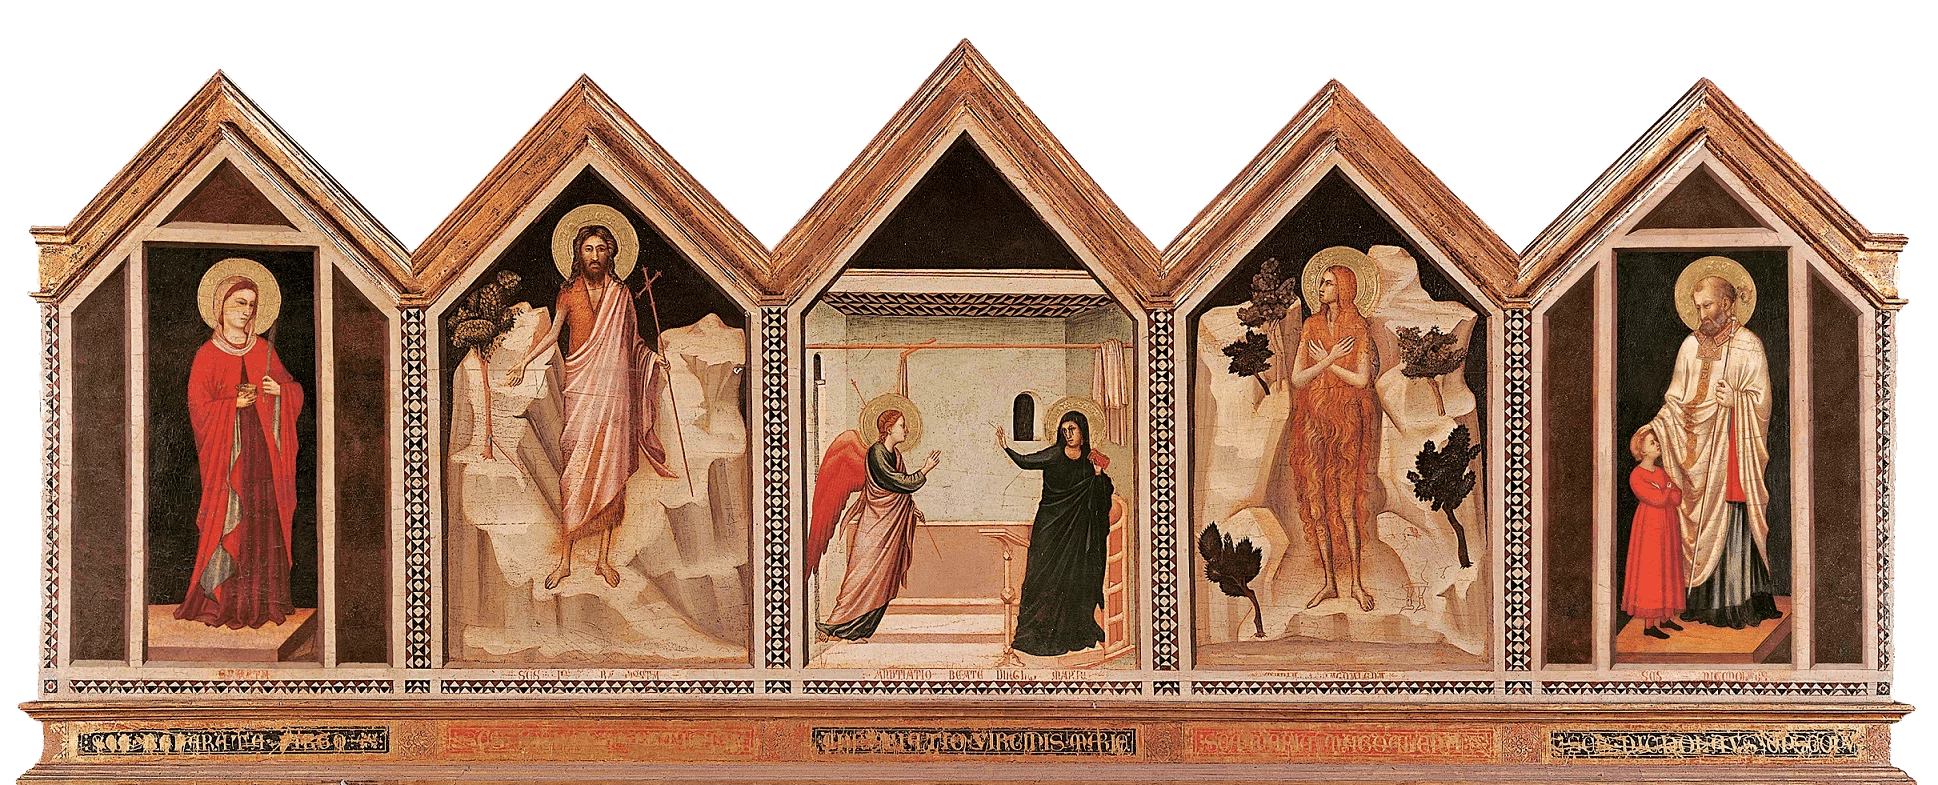 Altarpiece of Santa Reparata — Back, Giotto di Bondone